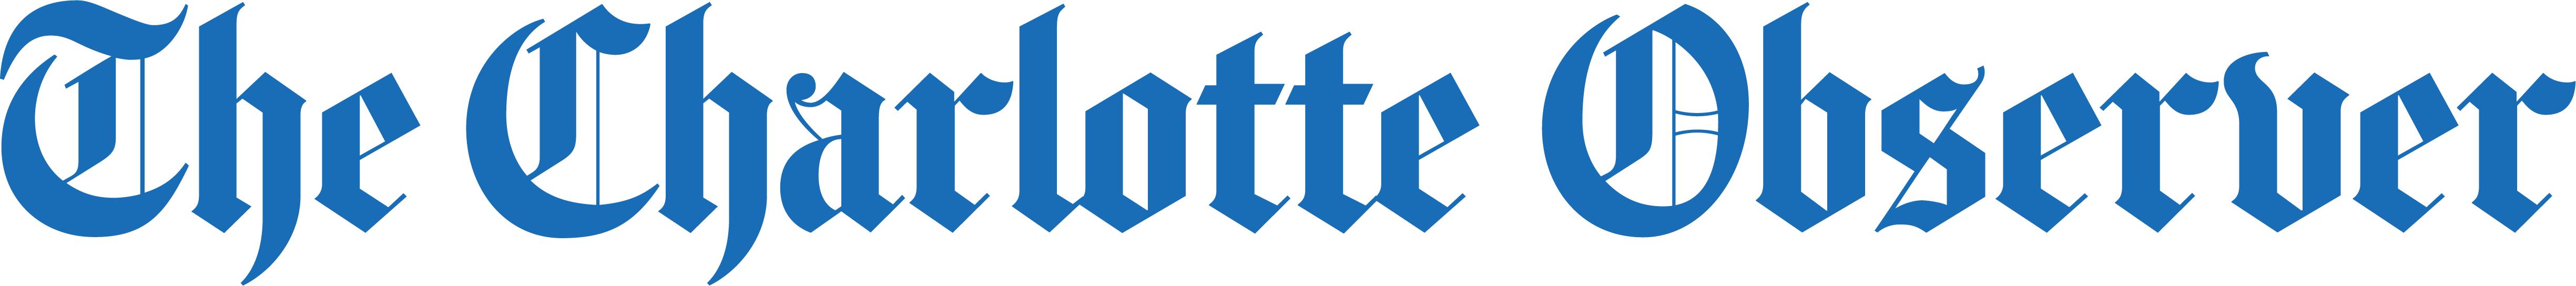 The Charlotte Observer wordmark